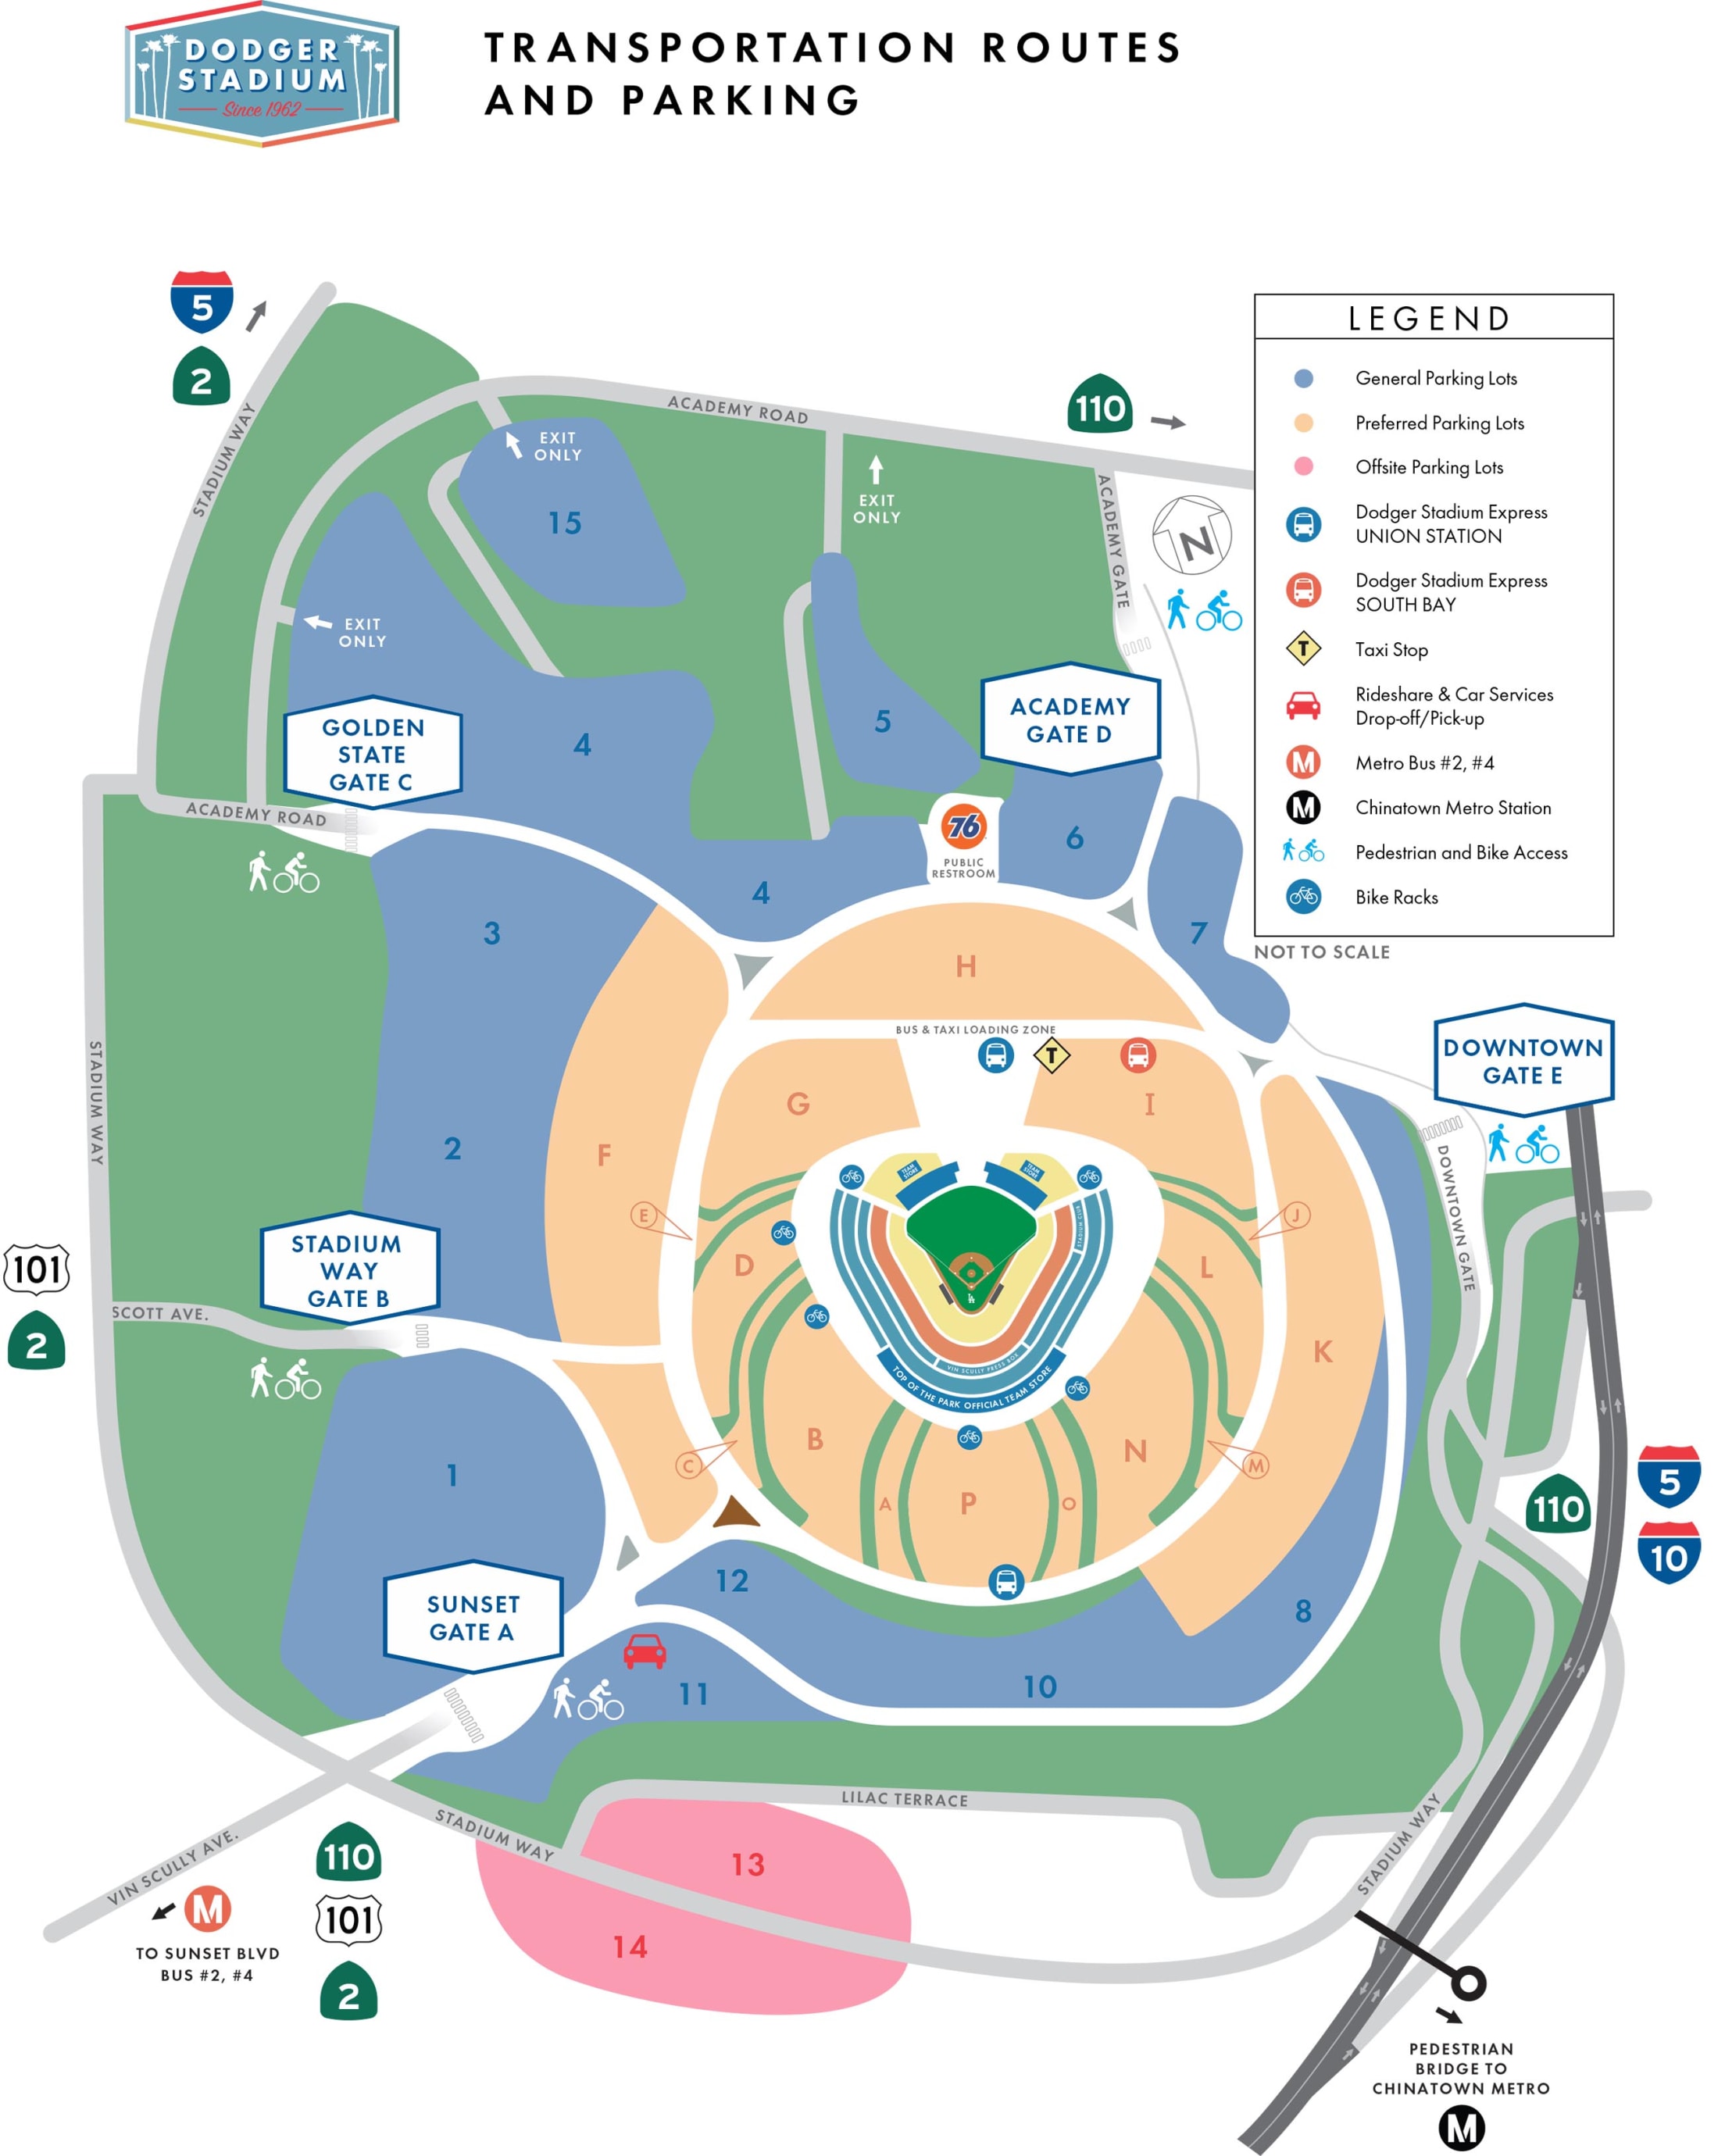 Dodger Stadium BMW Club Suites - Elysian Park - 1 tip